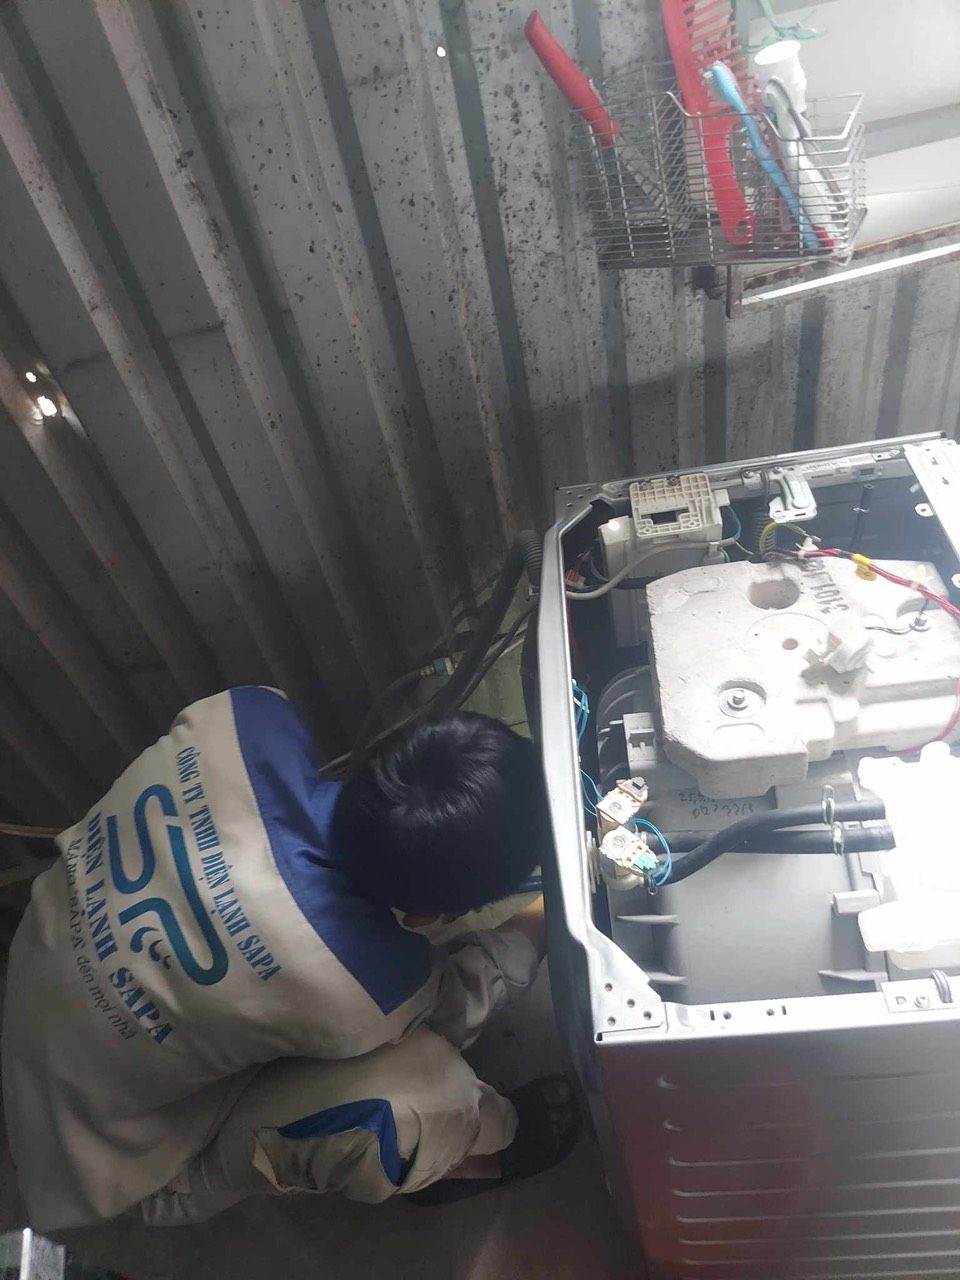 Nhân viên kỹ thuật của Điện Lạnh Sapa lành nghề và dày dặn kinh nghiệm sẽ giúp sửa máy giặt nhà bạn nhanh chóng